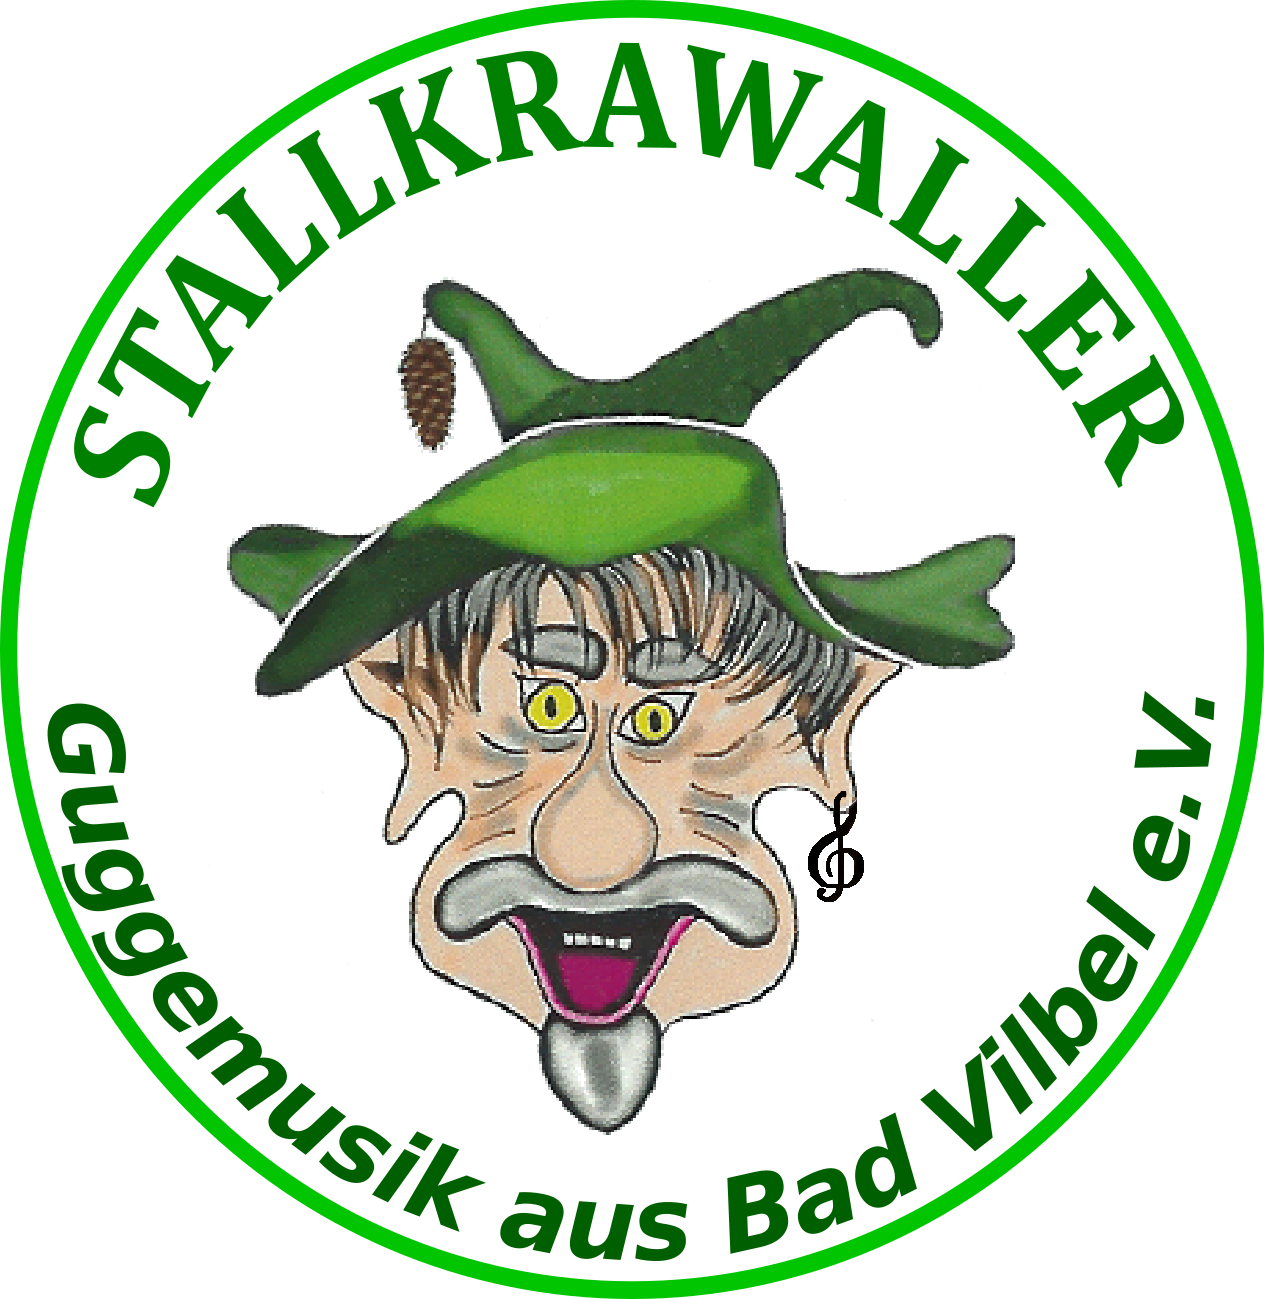 (c) Stallkrawaller.de